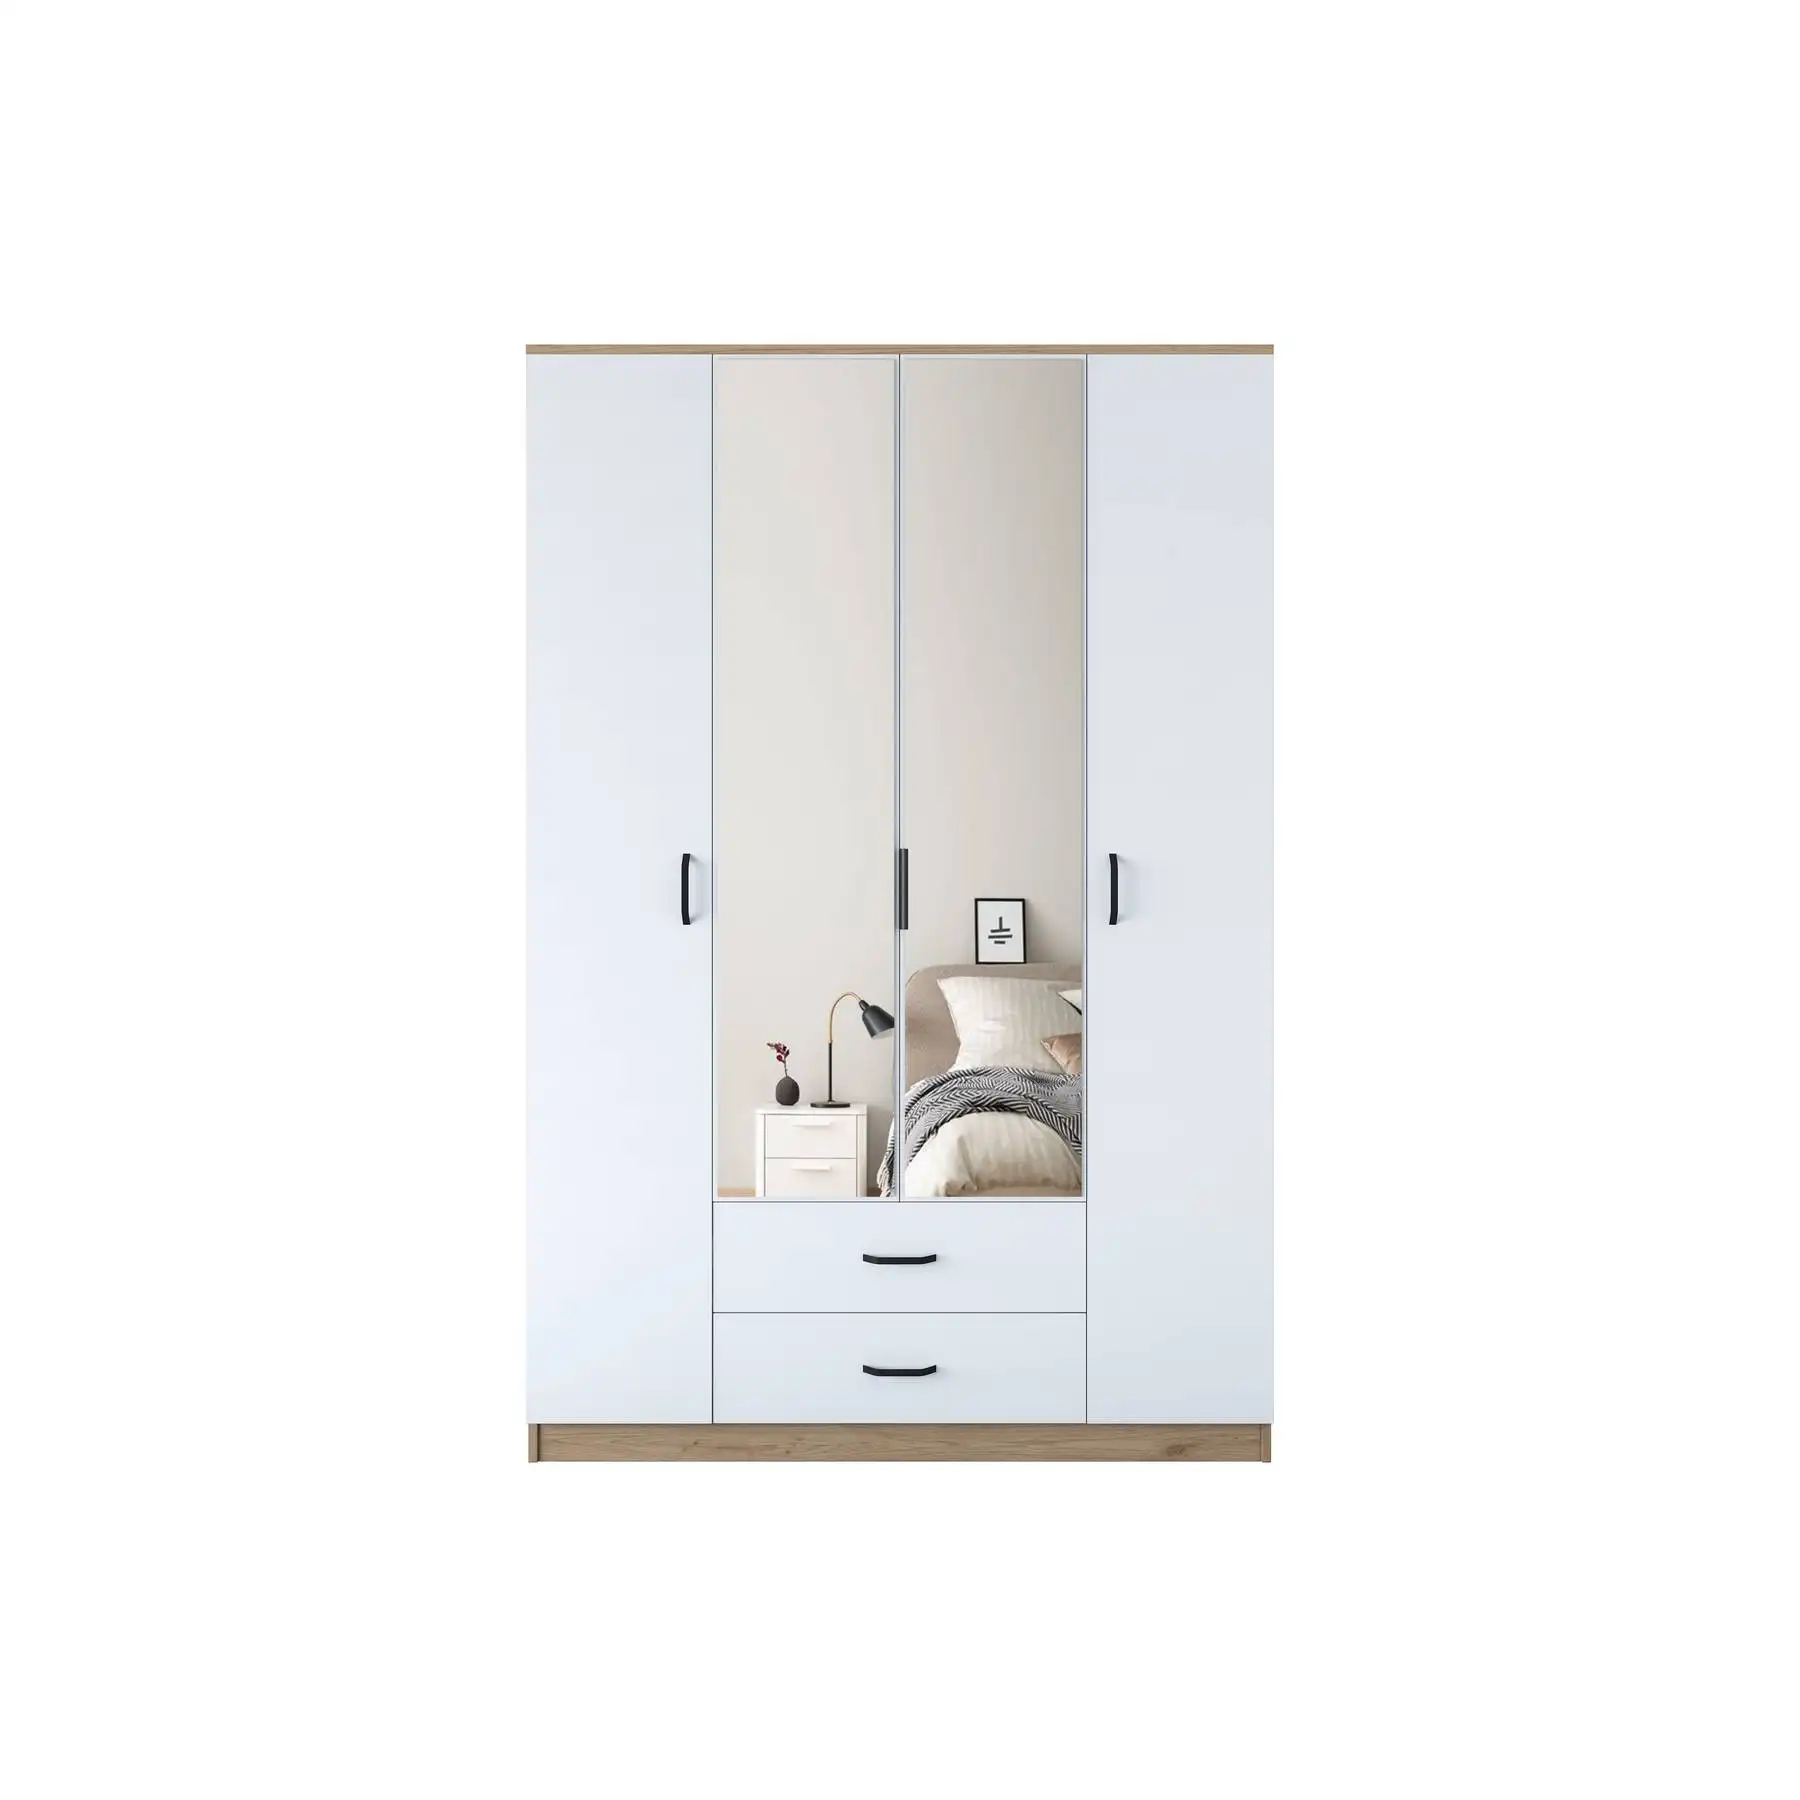 Rani BA131, зеркальные двери для шкафа с грецким орехом белого цвета, Фабричный продавец, Турецкая мебель, оптовая продажа